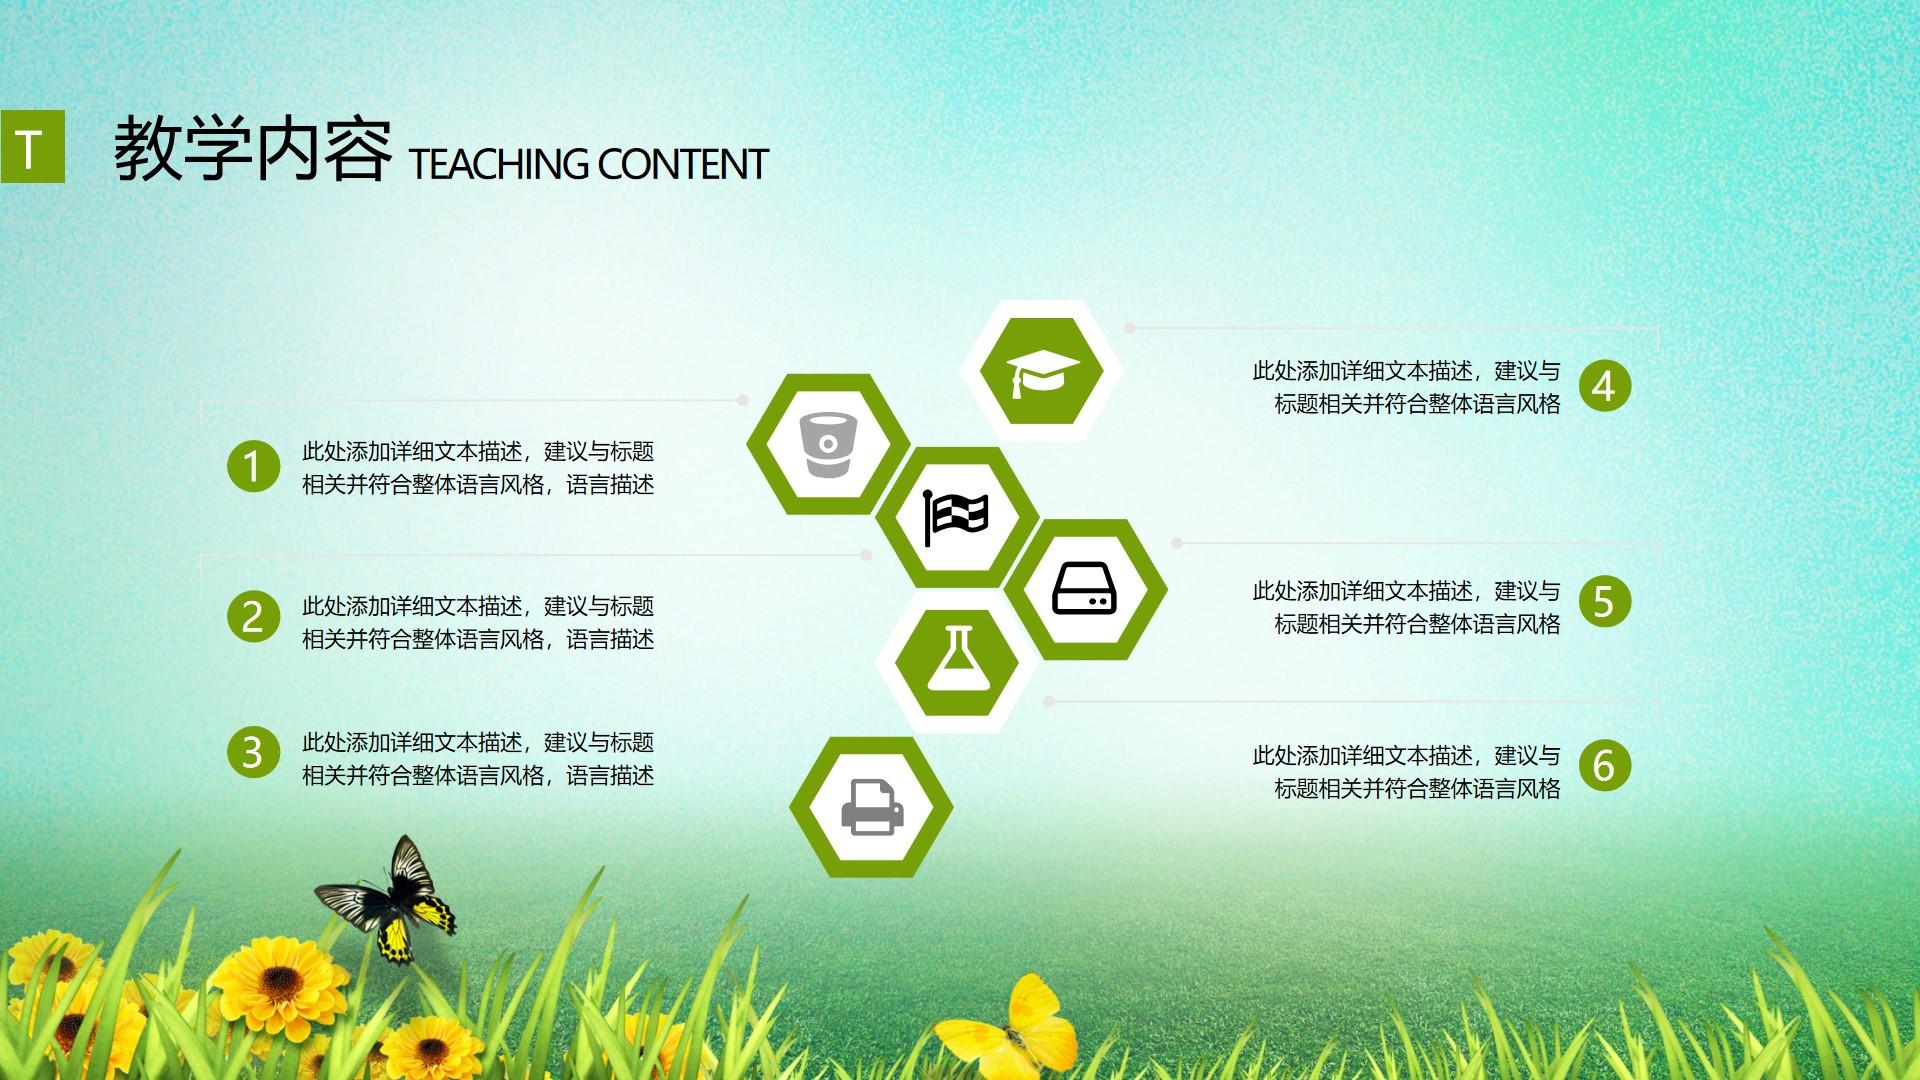 教育教学青色绿色卡通实景简洁建议 整体 风格 teaching content云素材PPT模板1672659531145